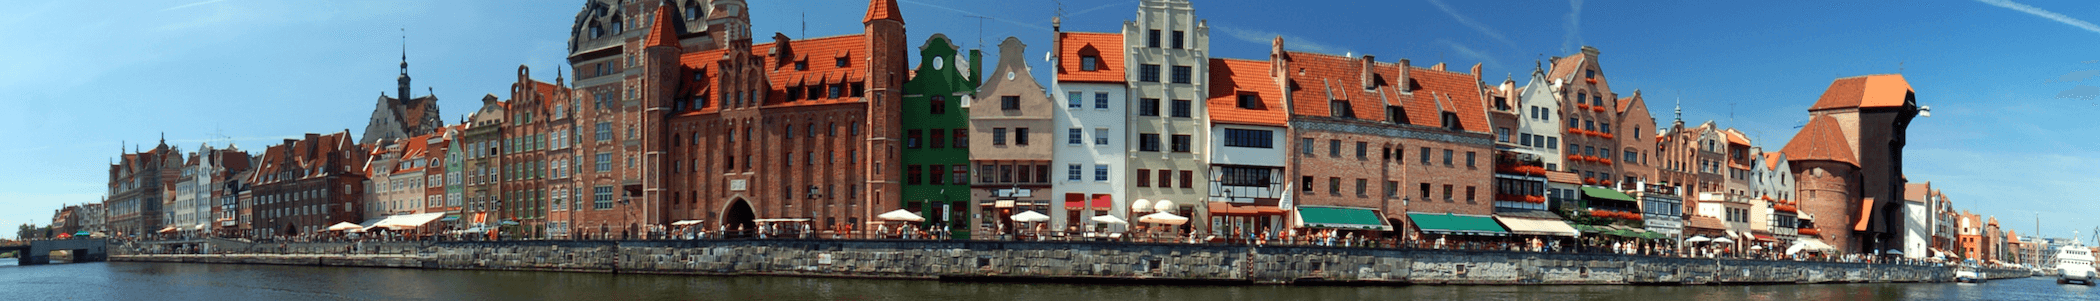 Banner image for Gdańsk on GigsGuide